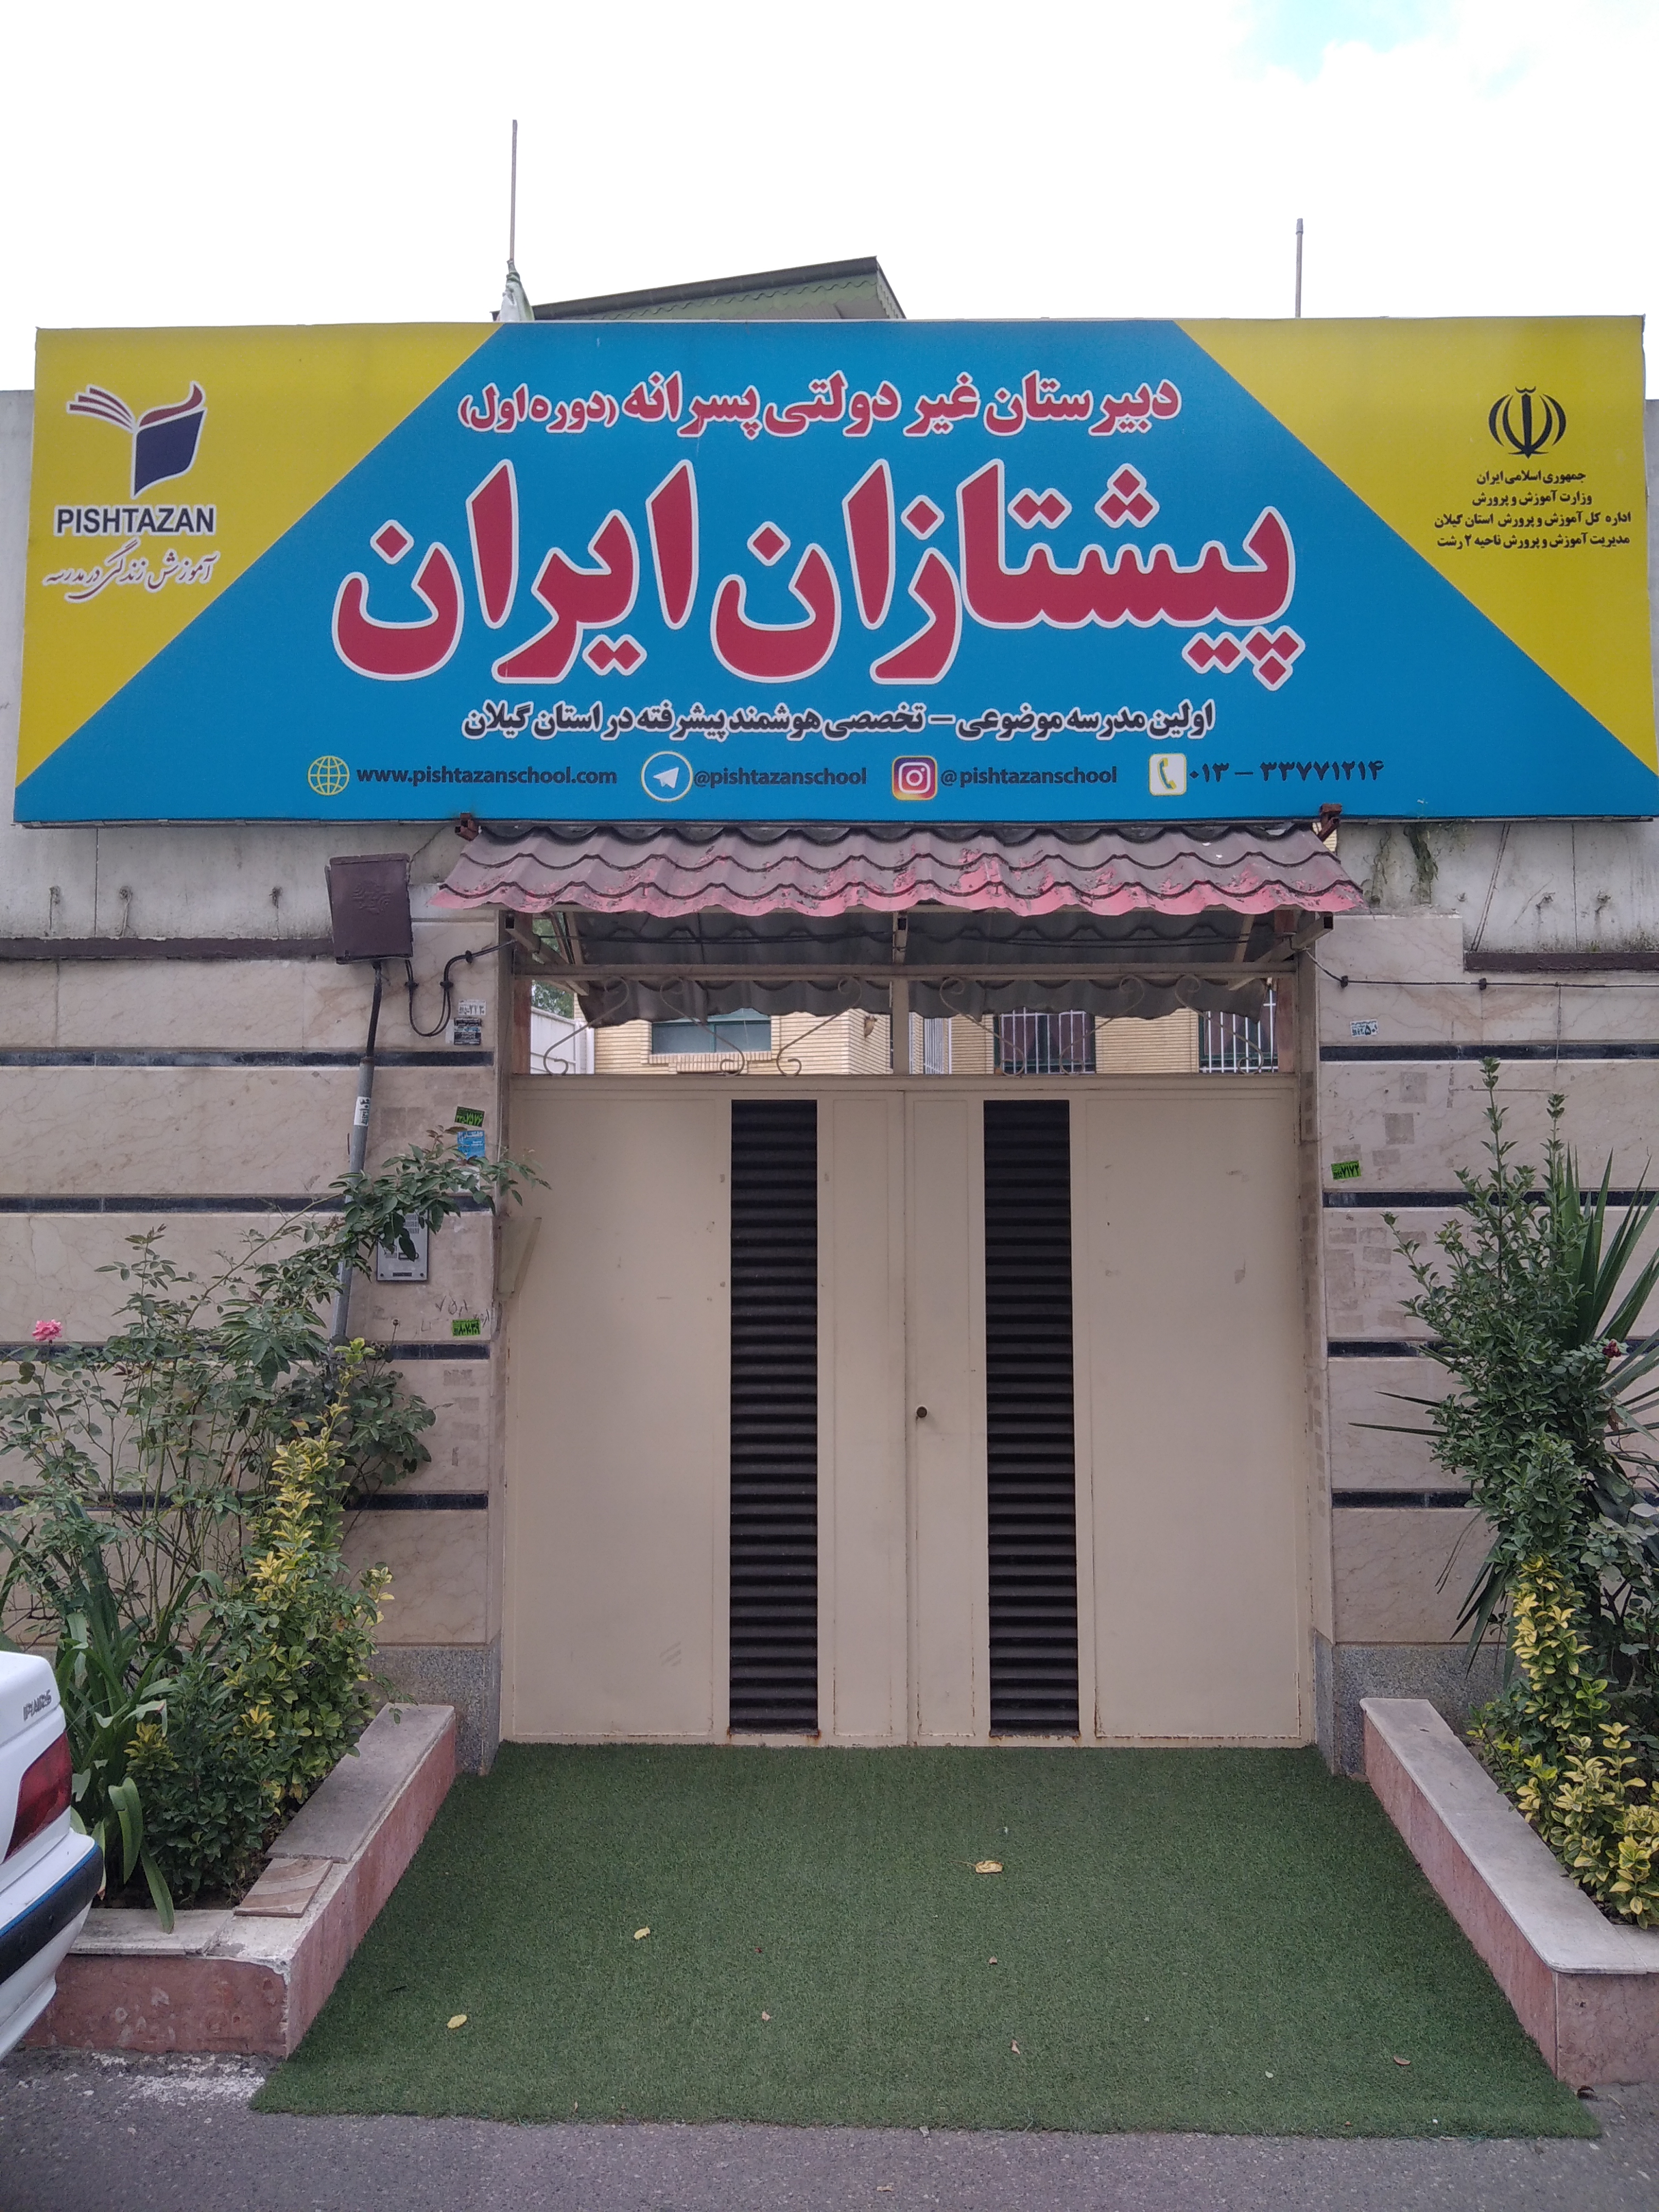 برگزاری مجدد  کلاس های آنلاین در  دبیرستان پیشتازان ایران با شروع سال تحصیلی جدید.